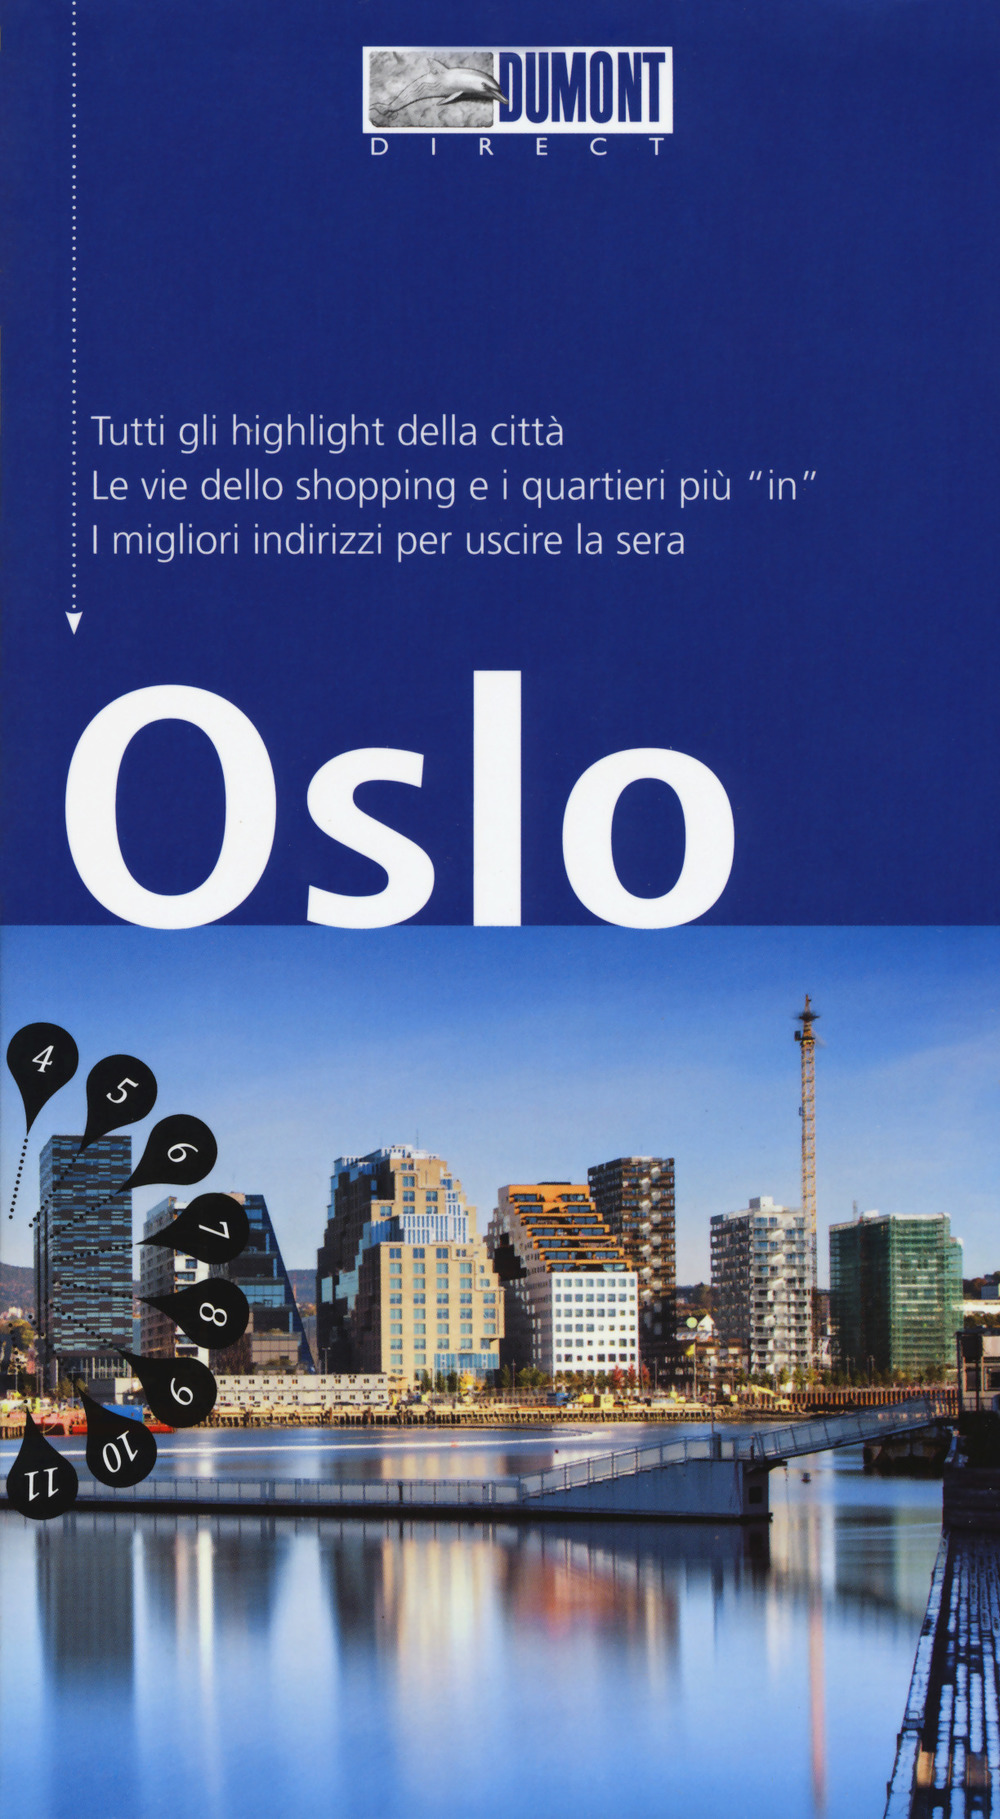 Oslo. Con mappa